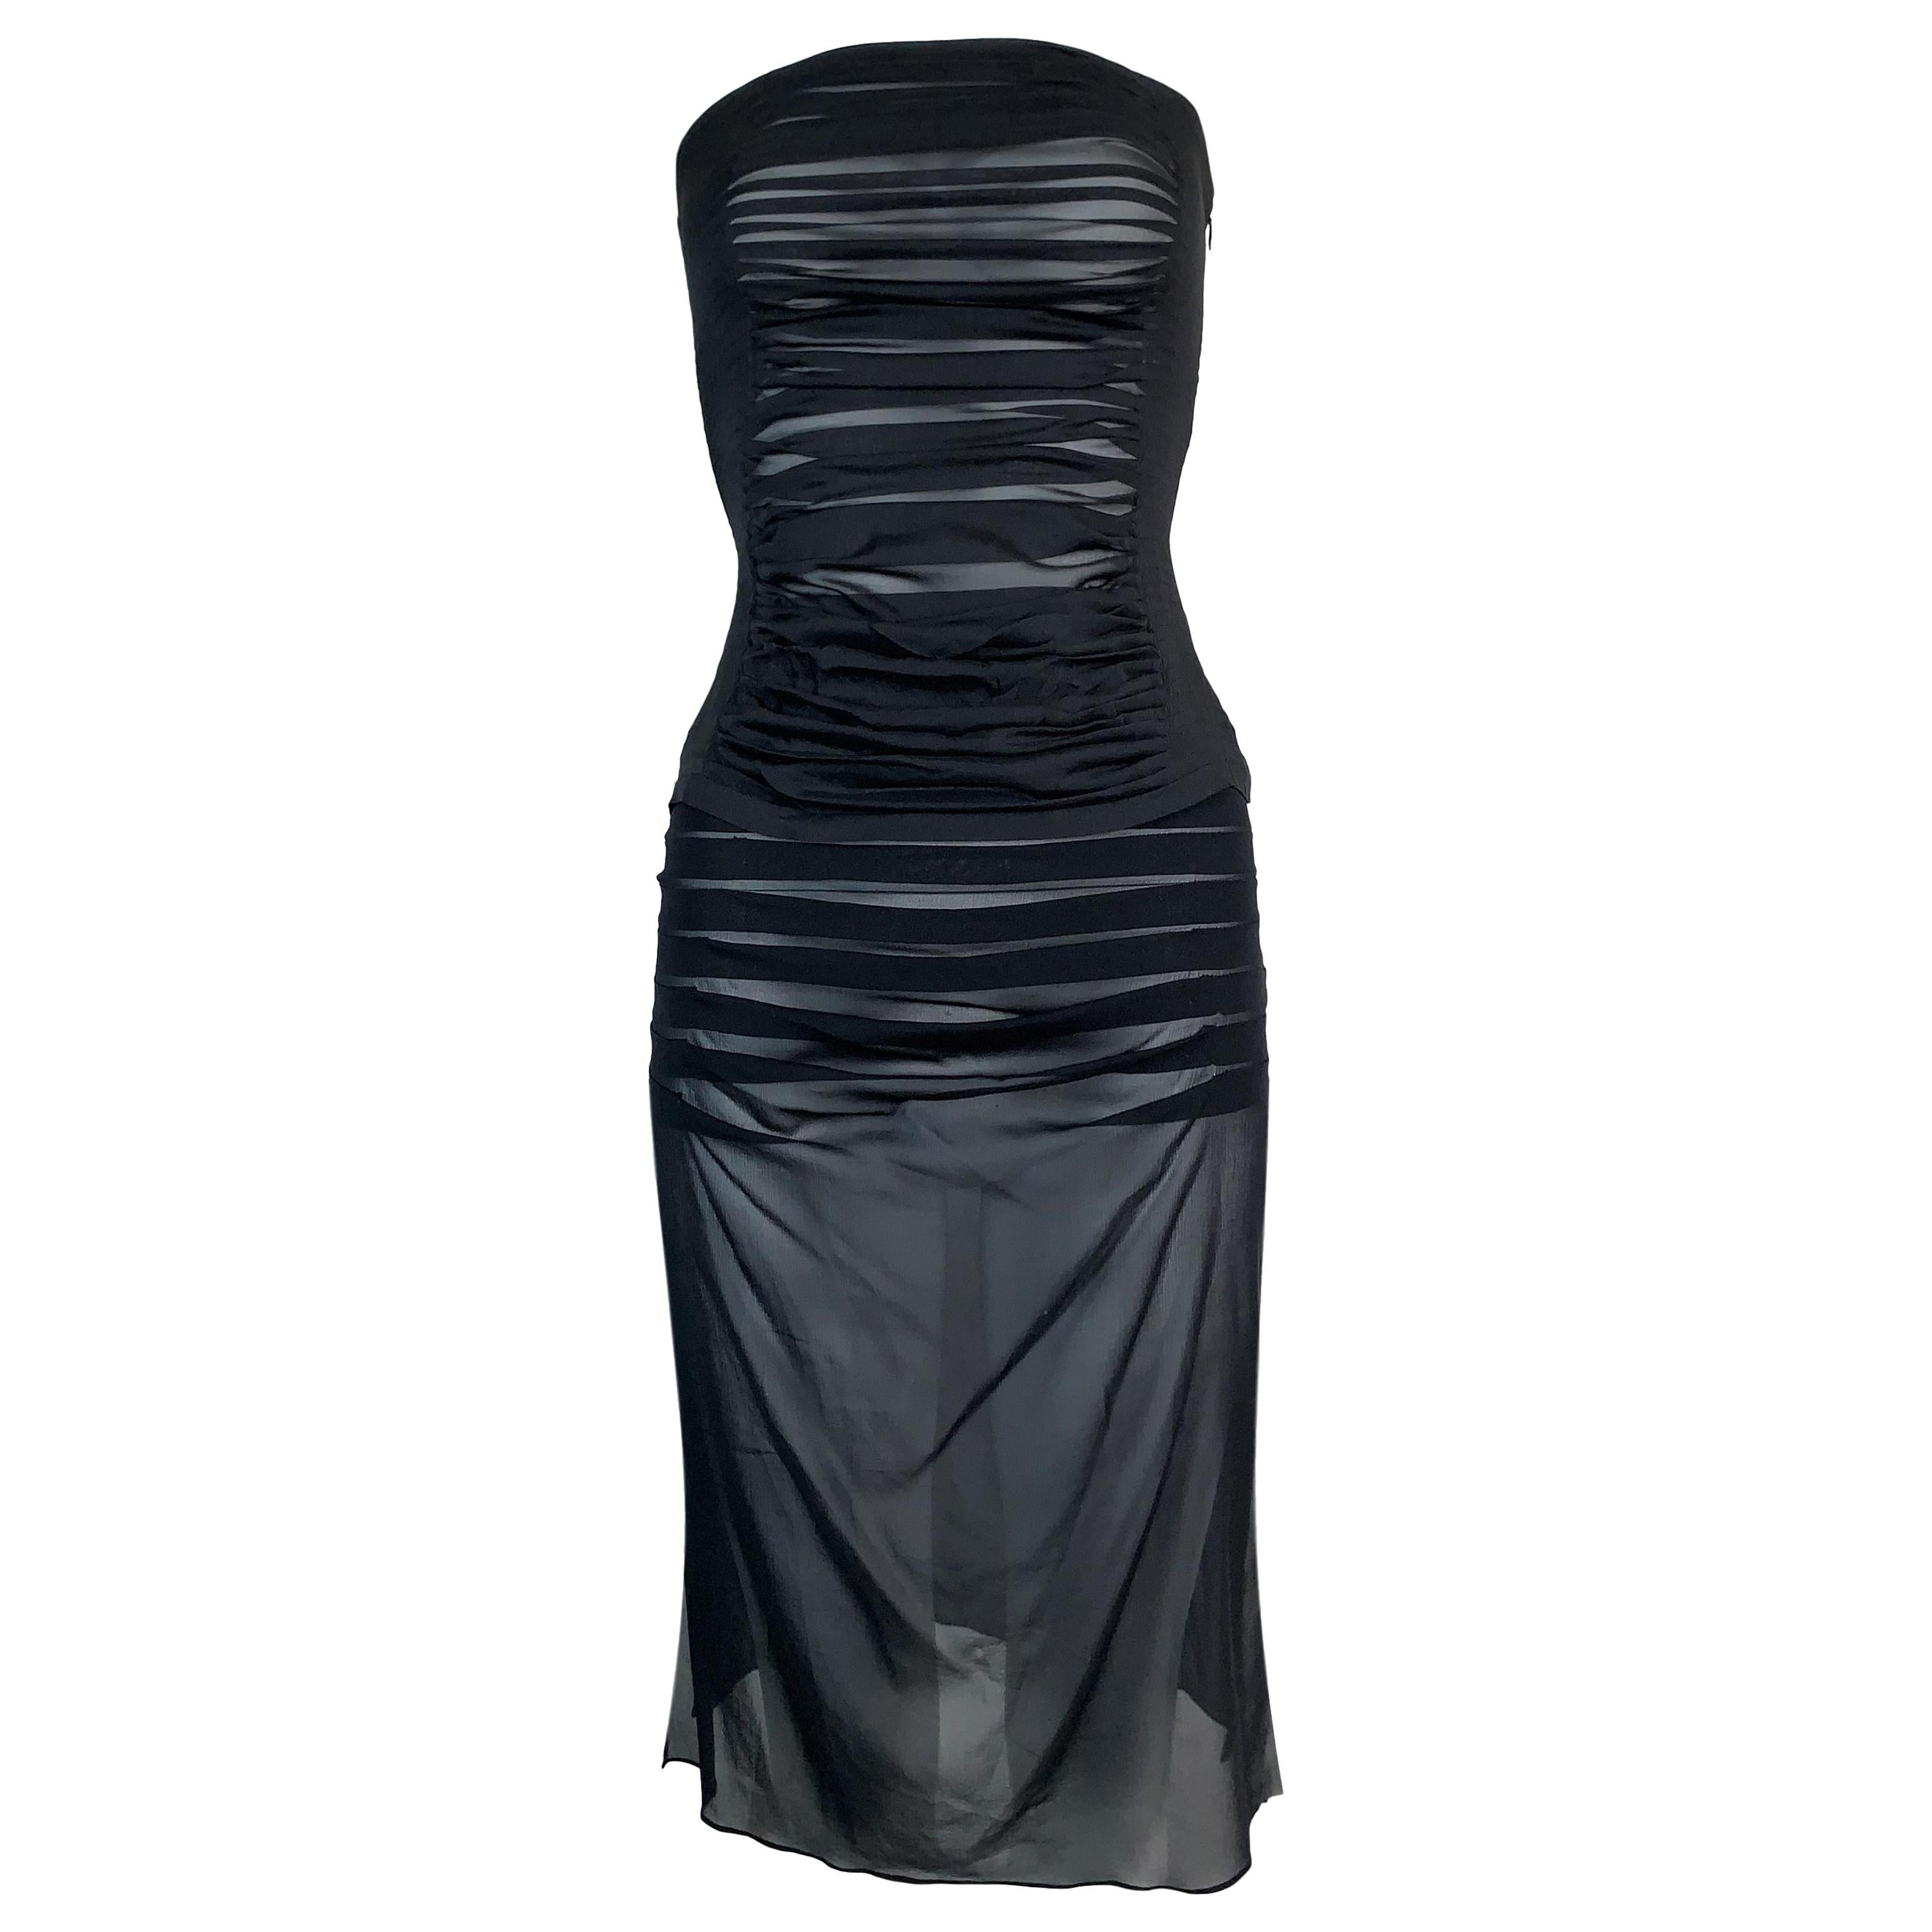 S/S 2001 Yves Saint Laurent Sheer Black Silk Ruched Strapless Top & Skirt Set